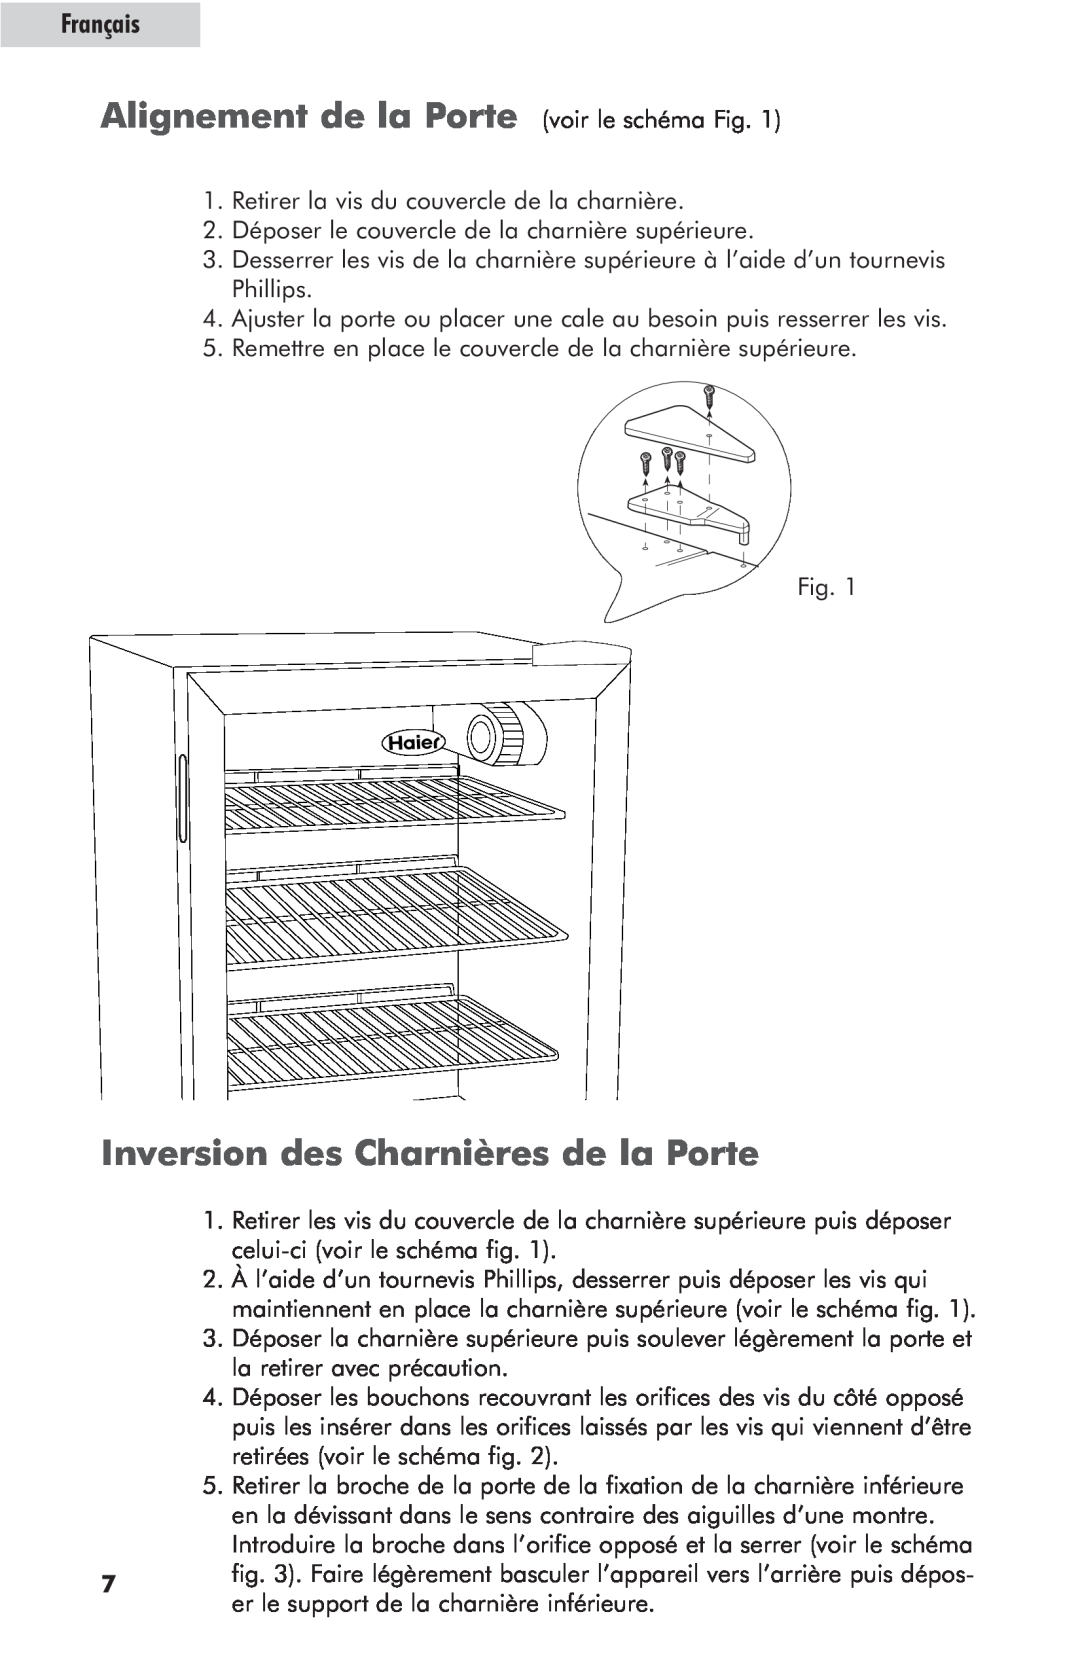 Haier hc125fvs user manual Alignement de la Porte voir le schéma Fig, Inversion des Charnières de la Porte, Français 